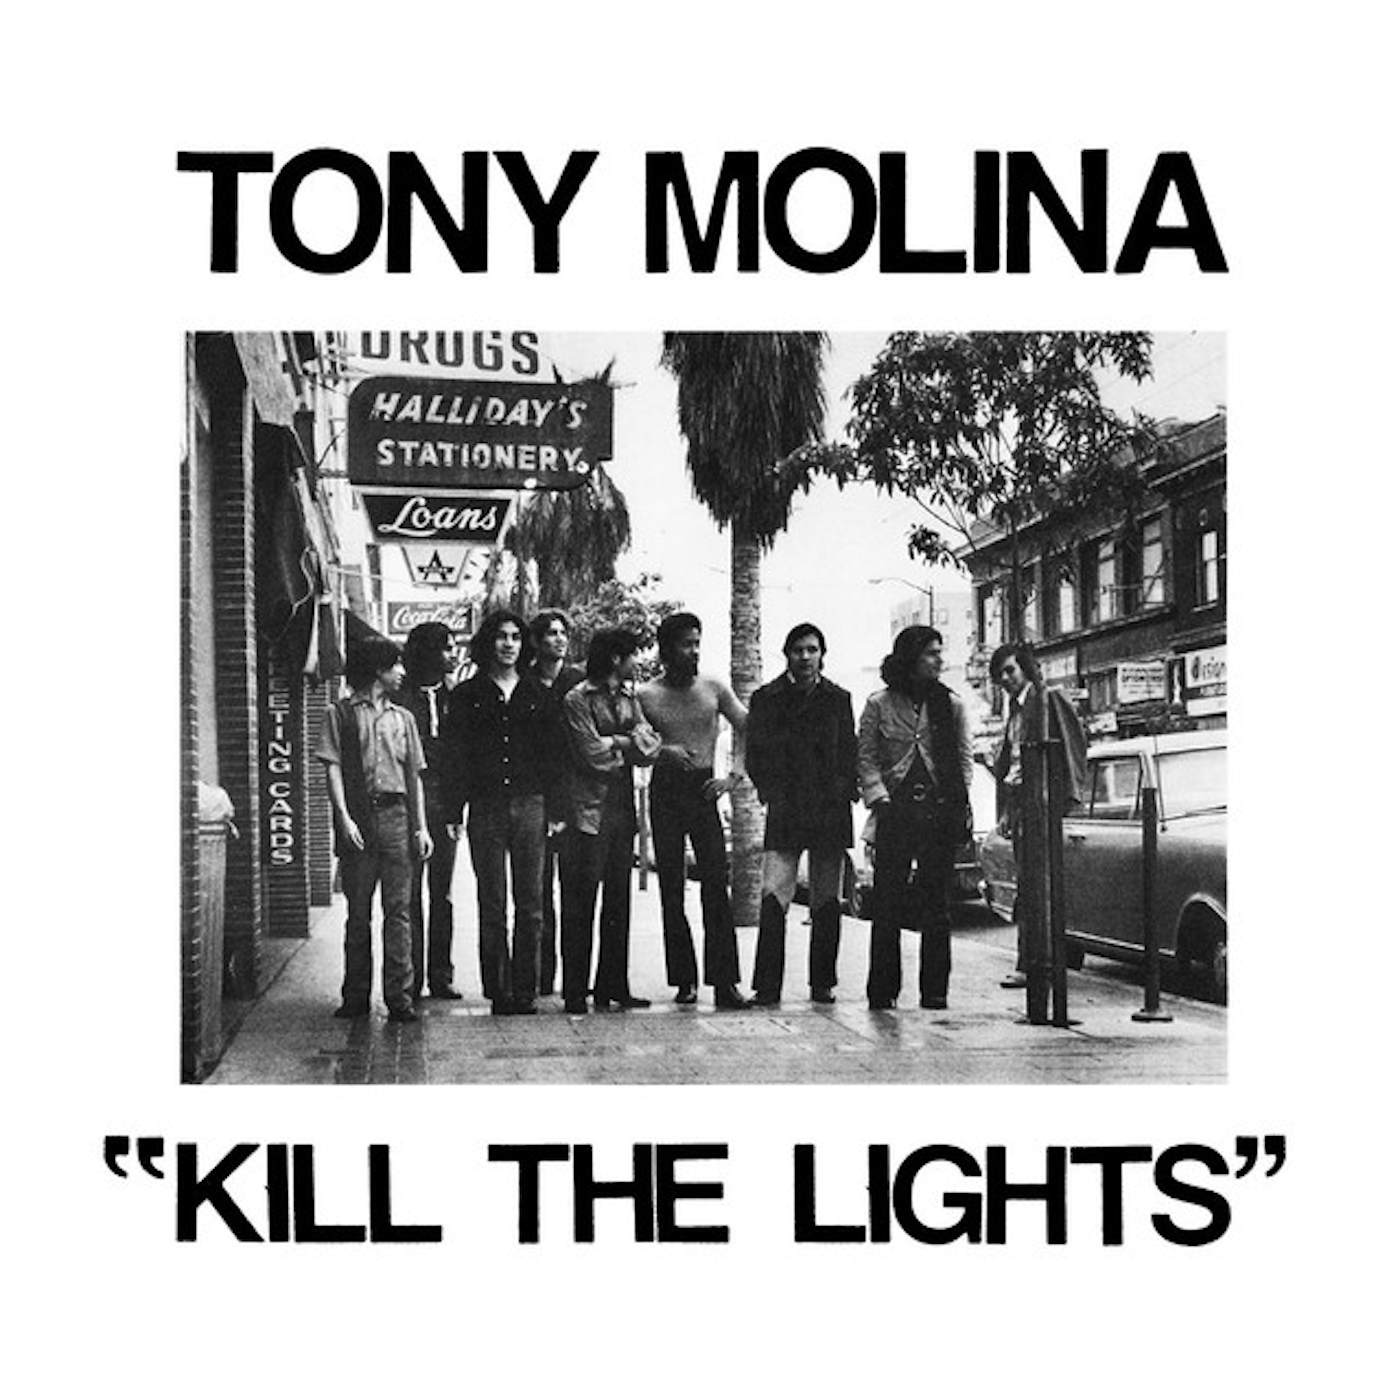 Tony Molina Kill the Lights Vinyl Record